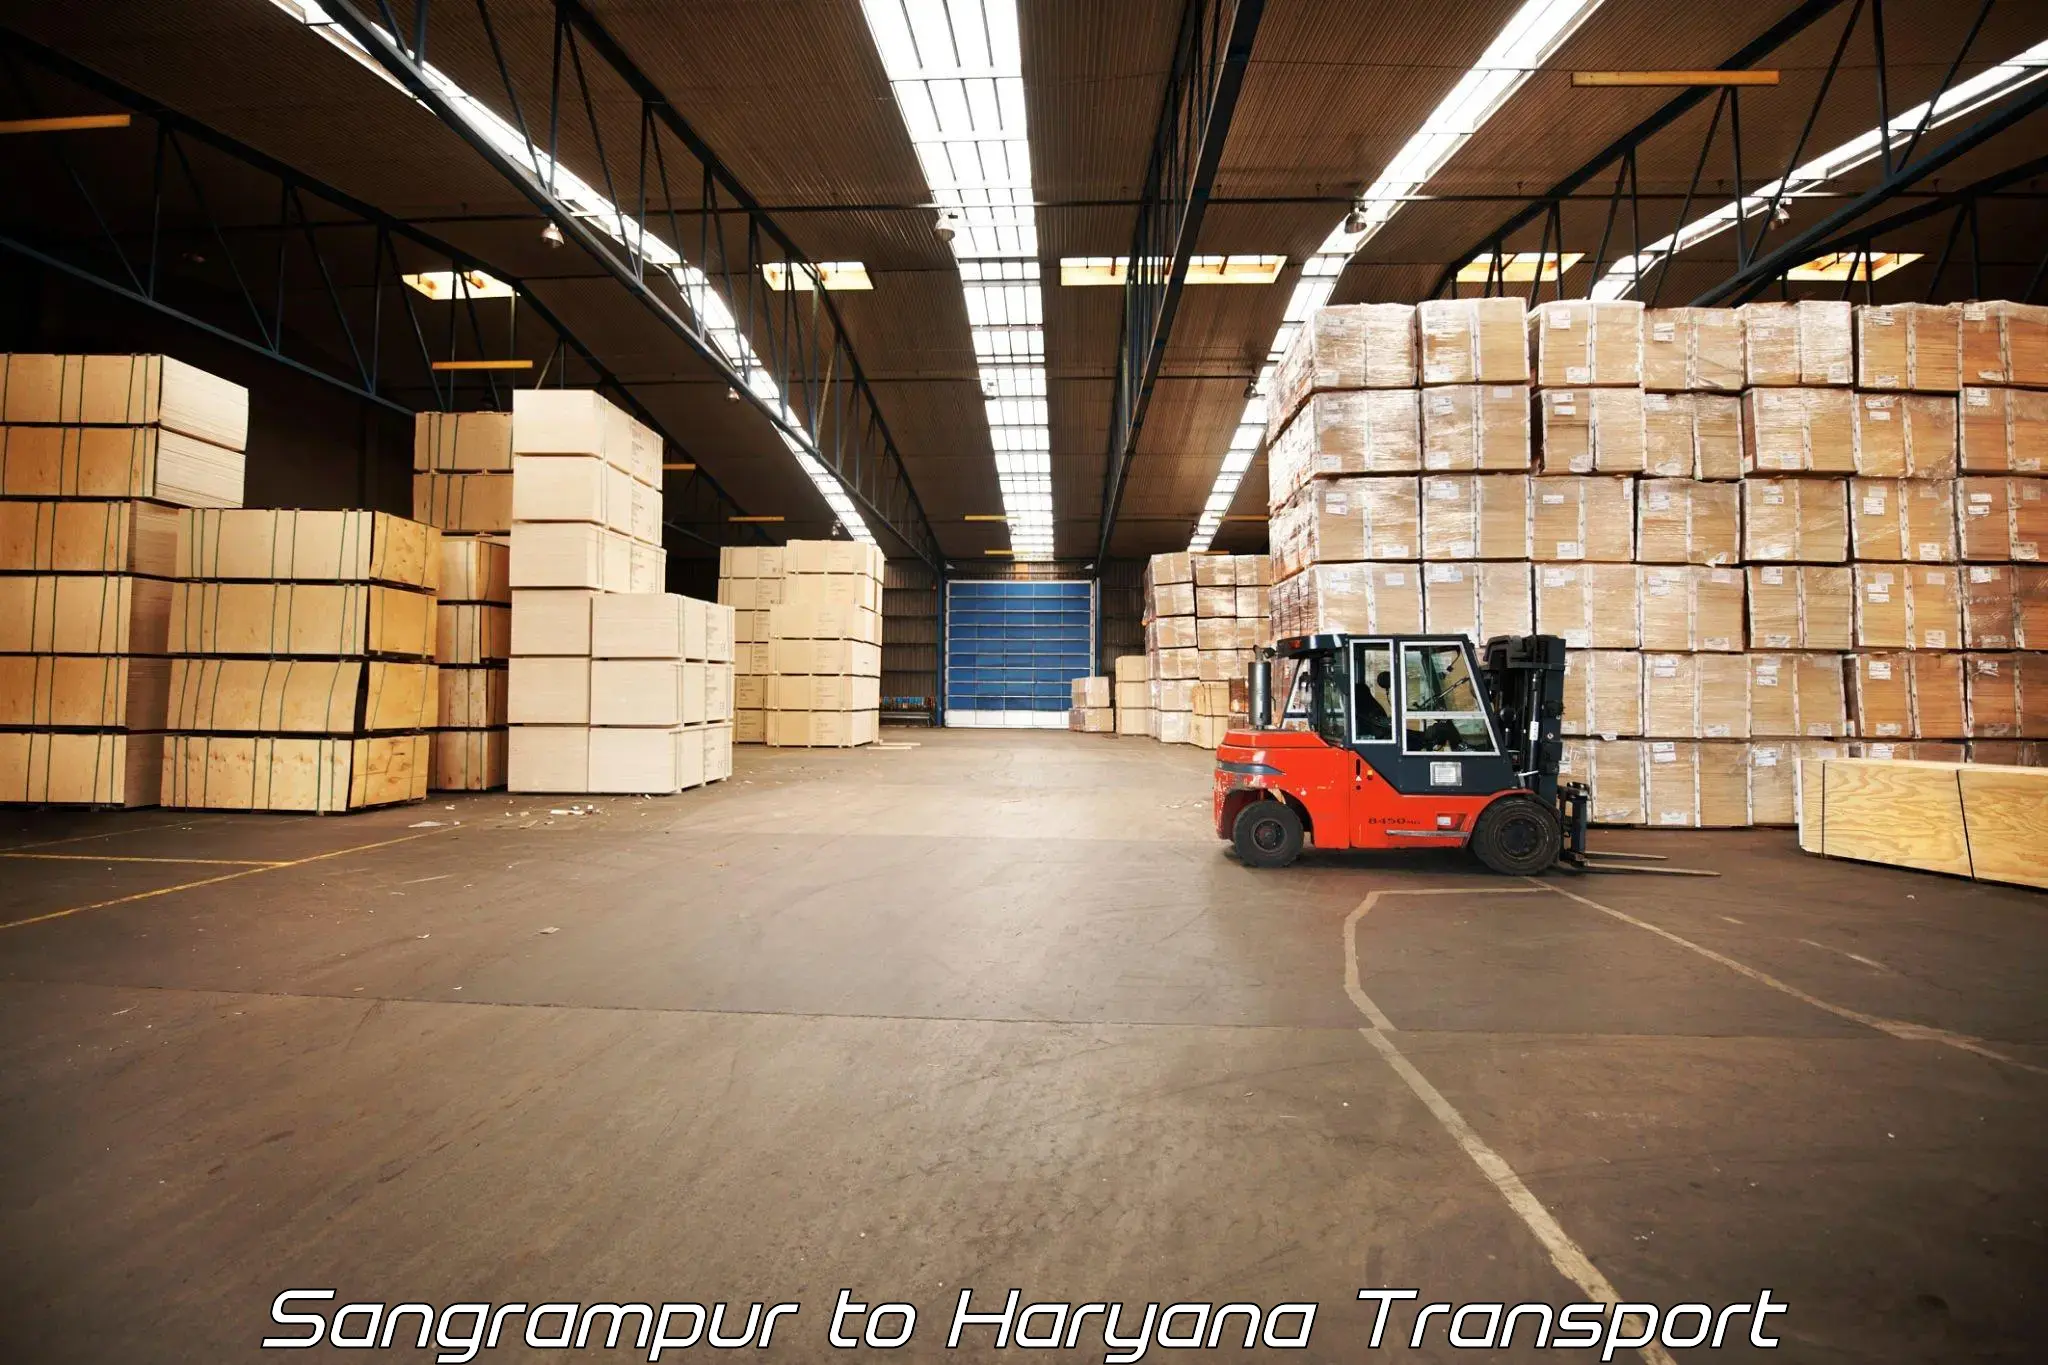 Luggage transport services Sangrampur to Gurgaon